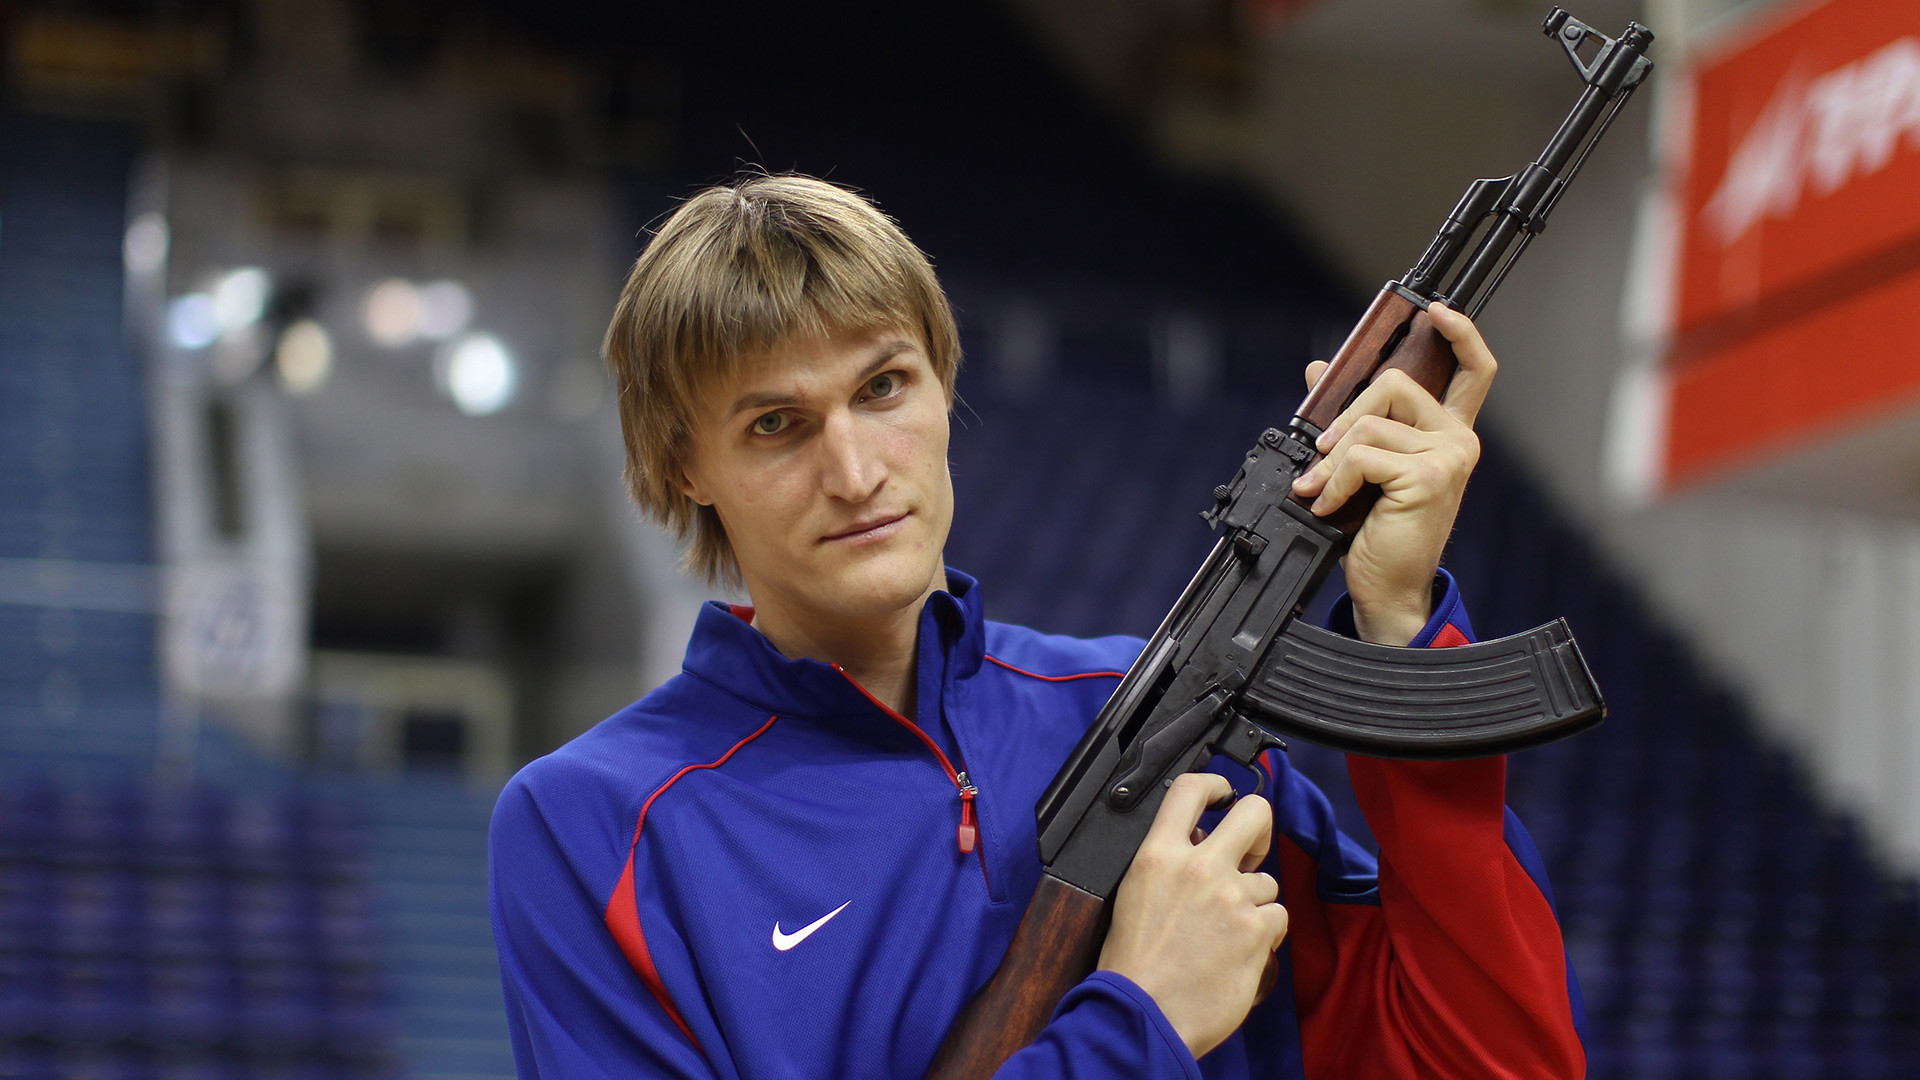 Bintang bola basket Andrei Kirilenko memegang AK dalam pemotretan untuk klub basket barunya.